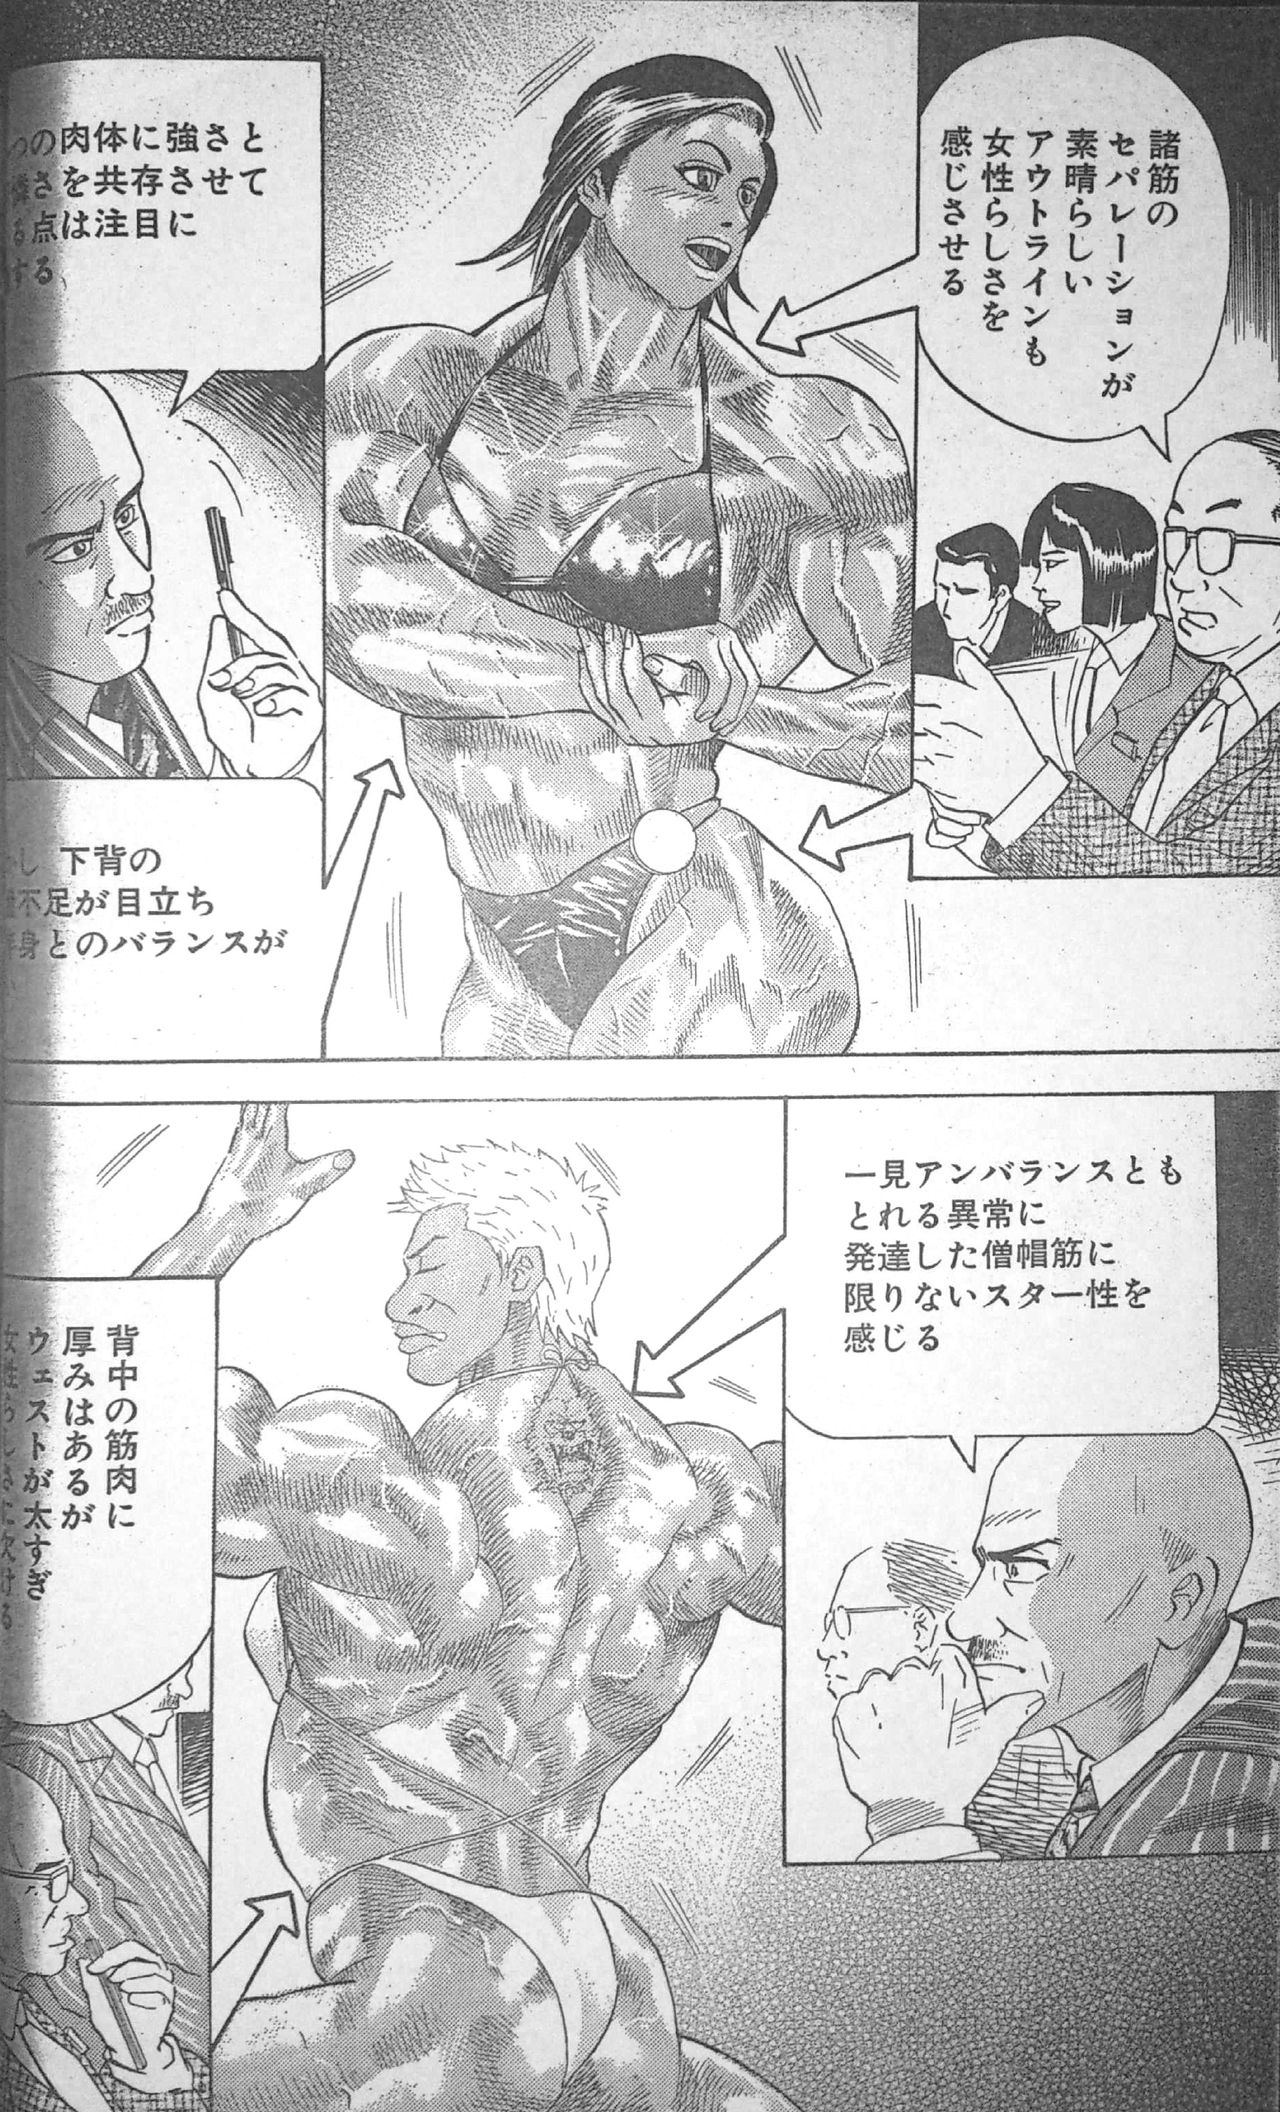 [冬木真人] マッスルストロベリー Chapter 3 (コミックバウンド 2000年11月14日)